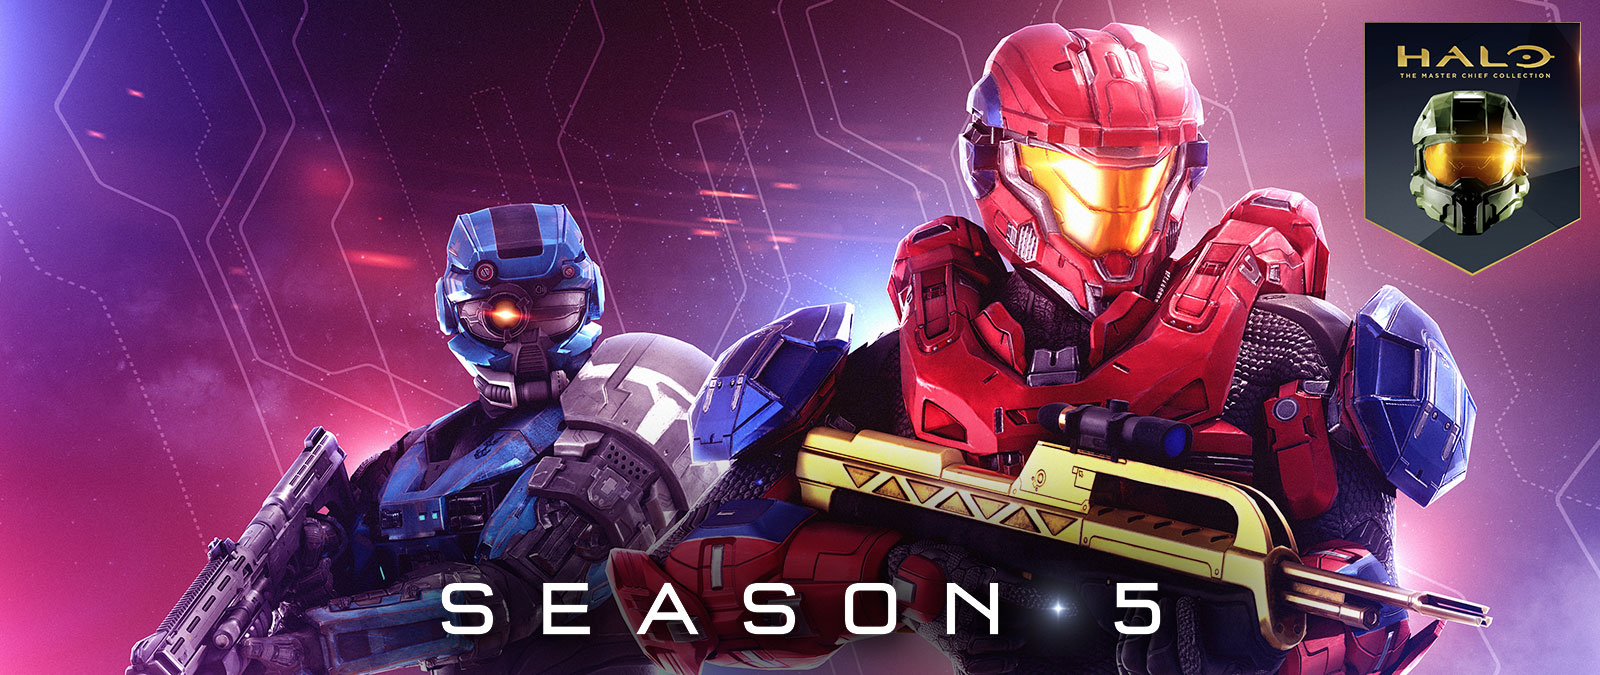 Halo: The Master Chief Collection, temporada 5, un Spartan rojo sostiene un rifle de batalla dorado mientras que un Spartan azul lleva un casco especial con un ojo